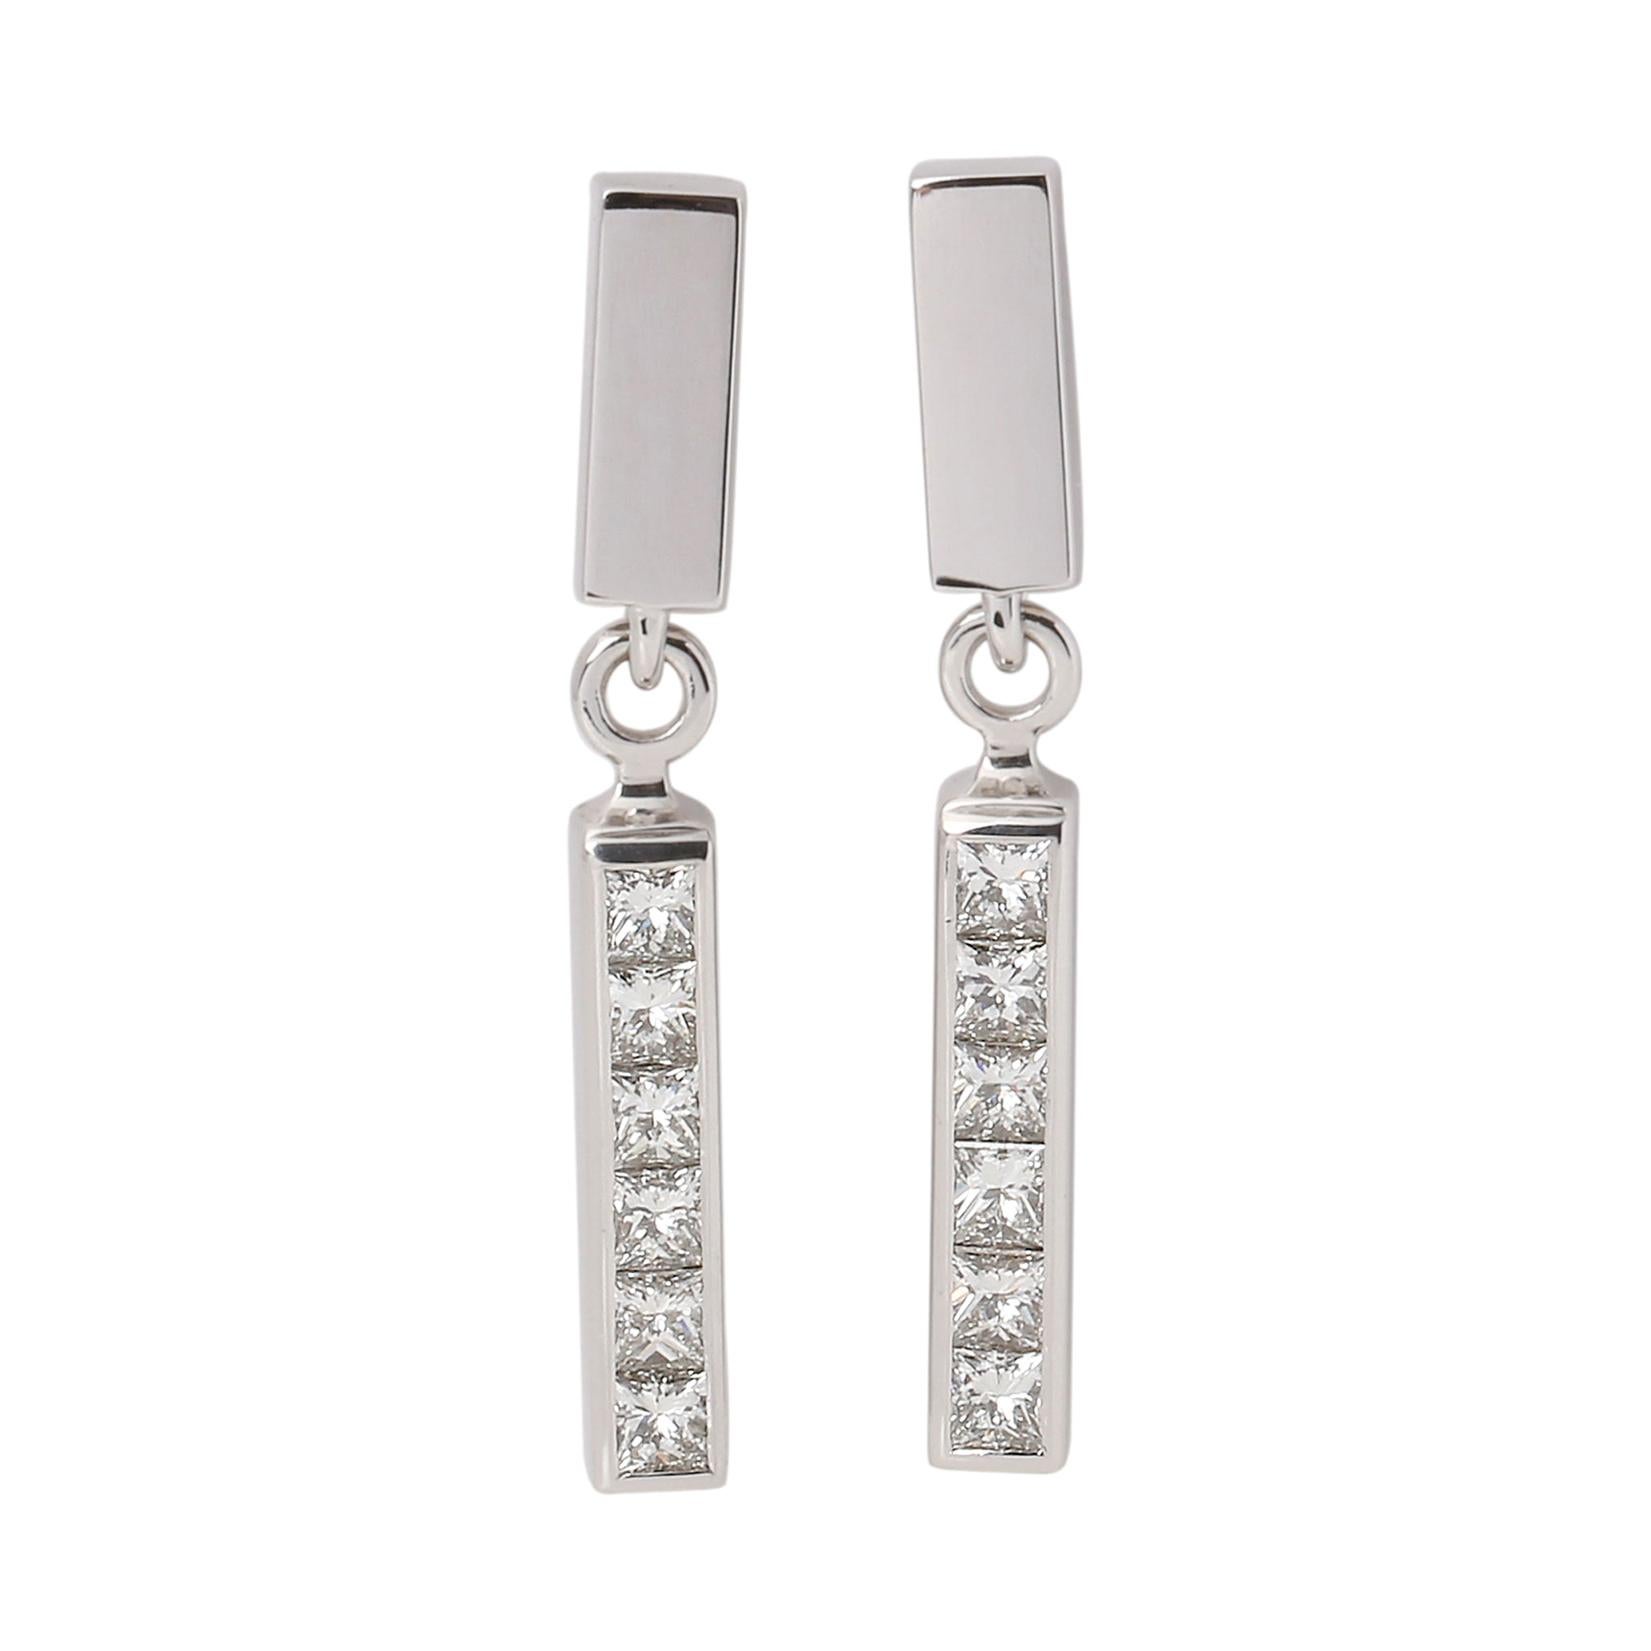 Theo Fennell Strip Princess Cut Diamond Interchangeable Earrings Set